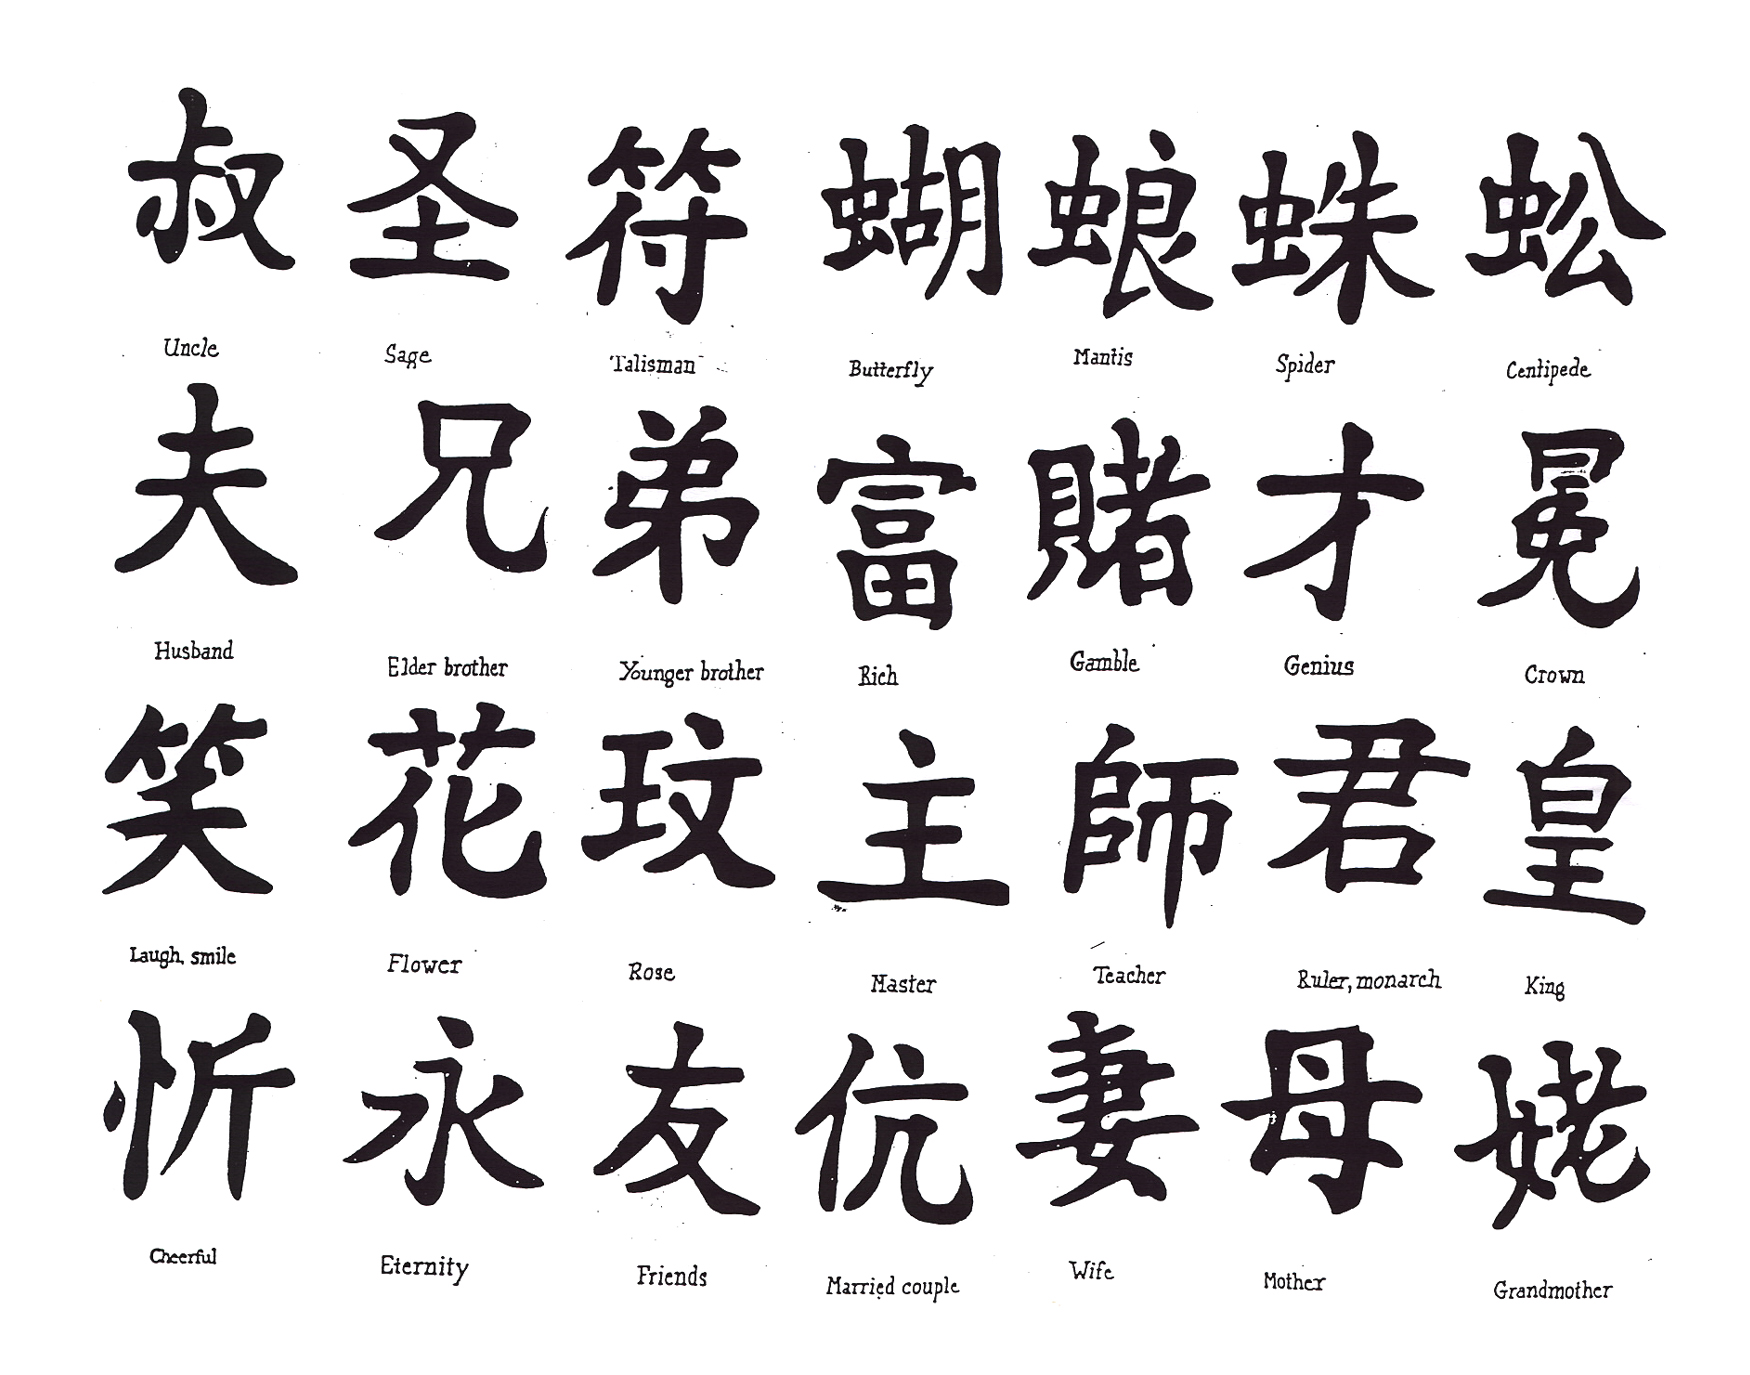 kanji tattoo designs translation | Tattooblr - Best Tattoos